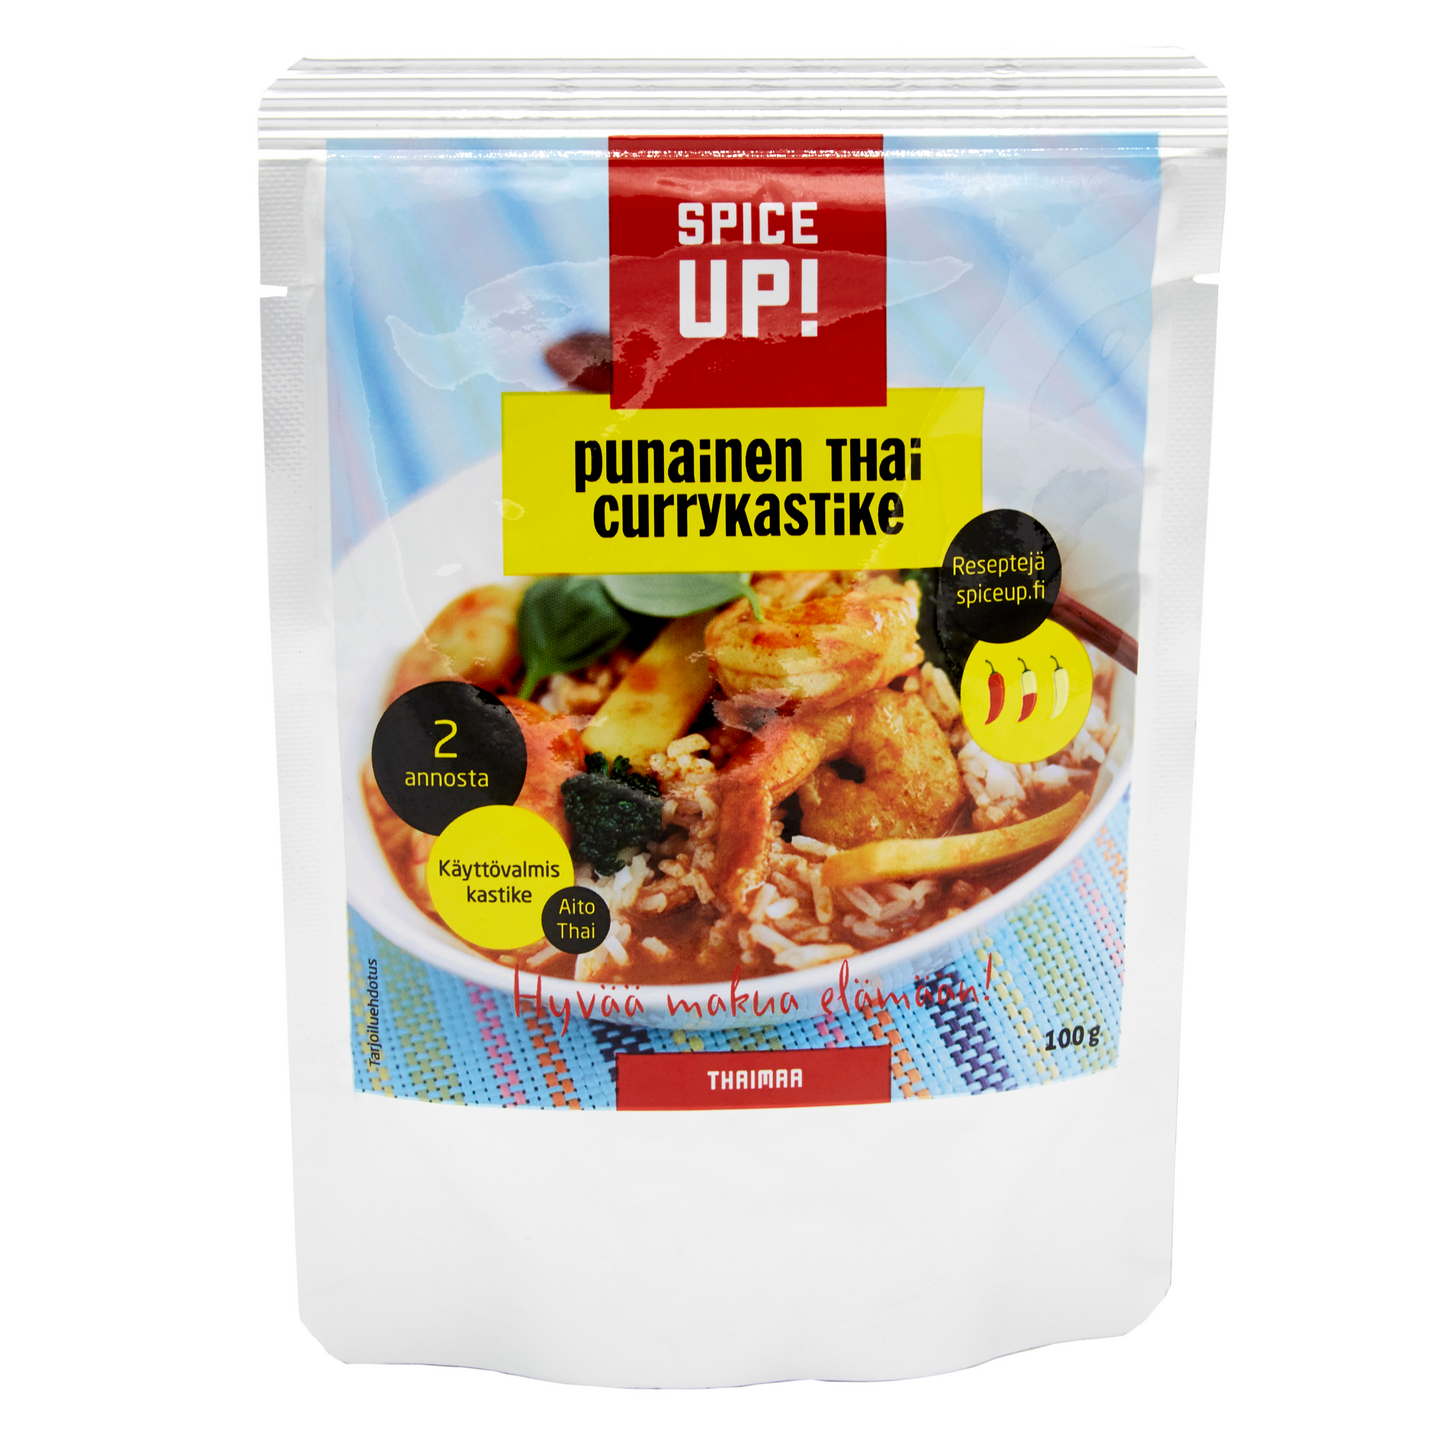 Spice Up Punainen thai currykastike 100g